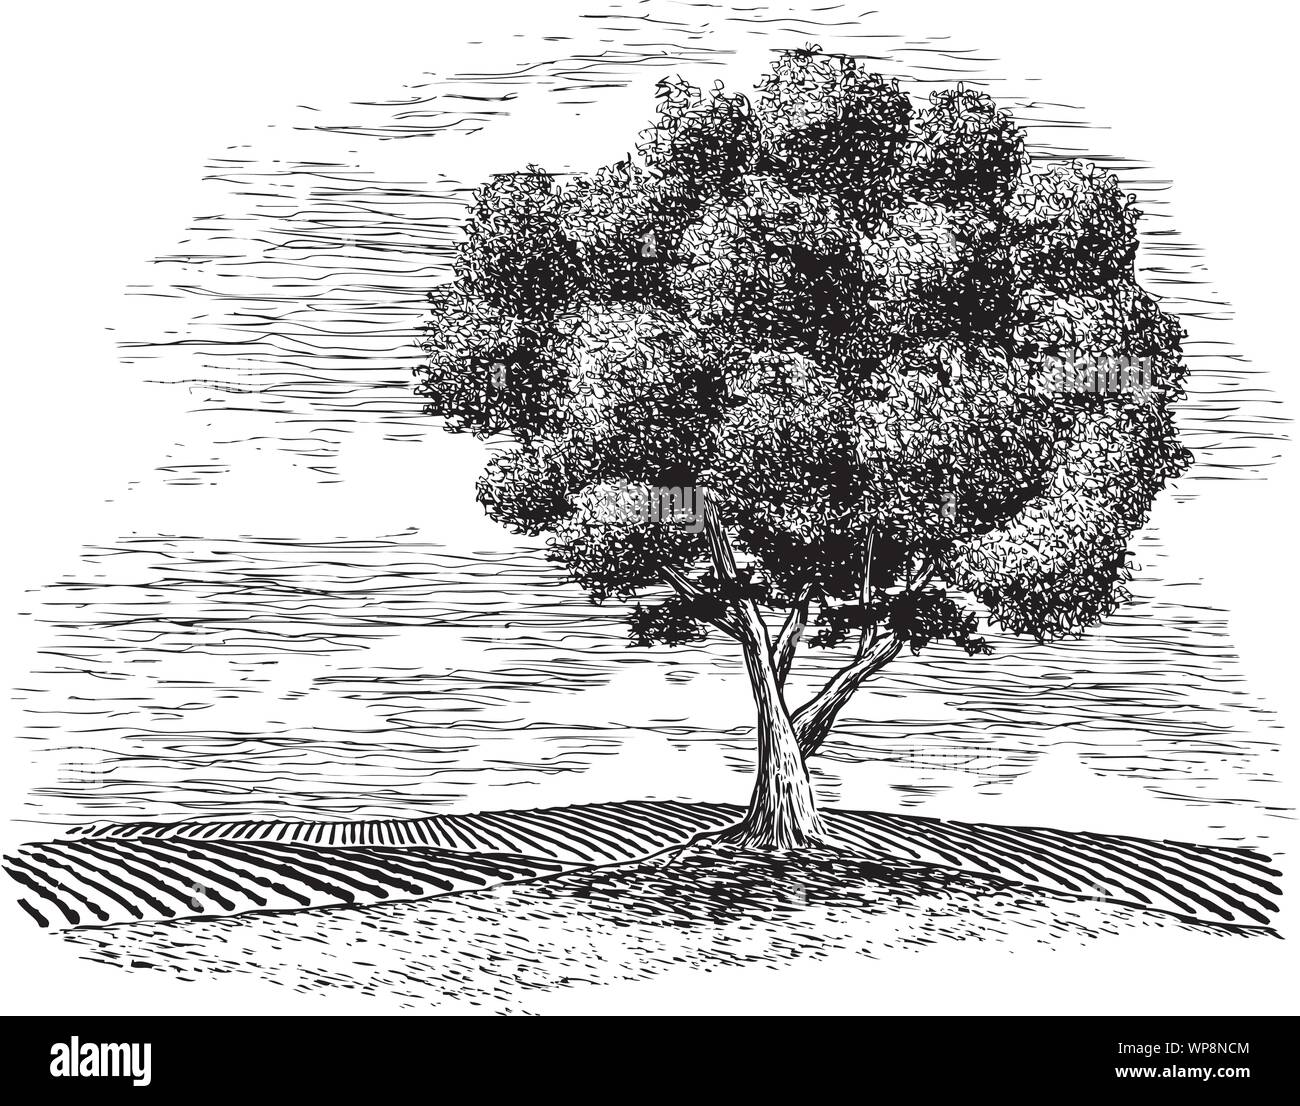 Holzschnitt Illustration einer ländlichen Landschaft mit einem Baum im Vordergrund. Stock Vektor